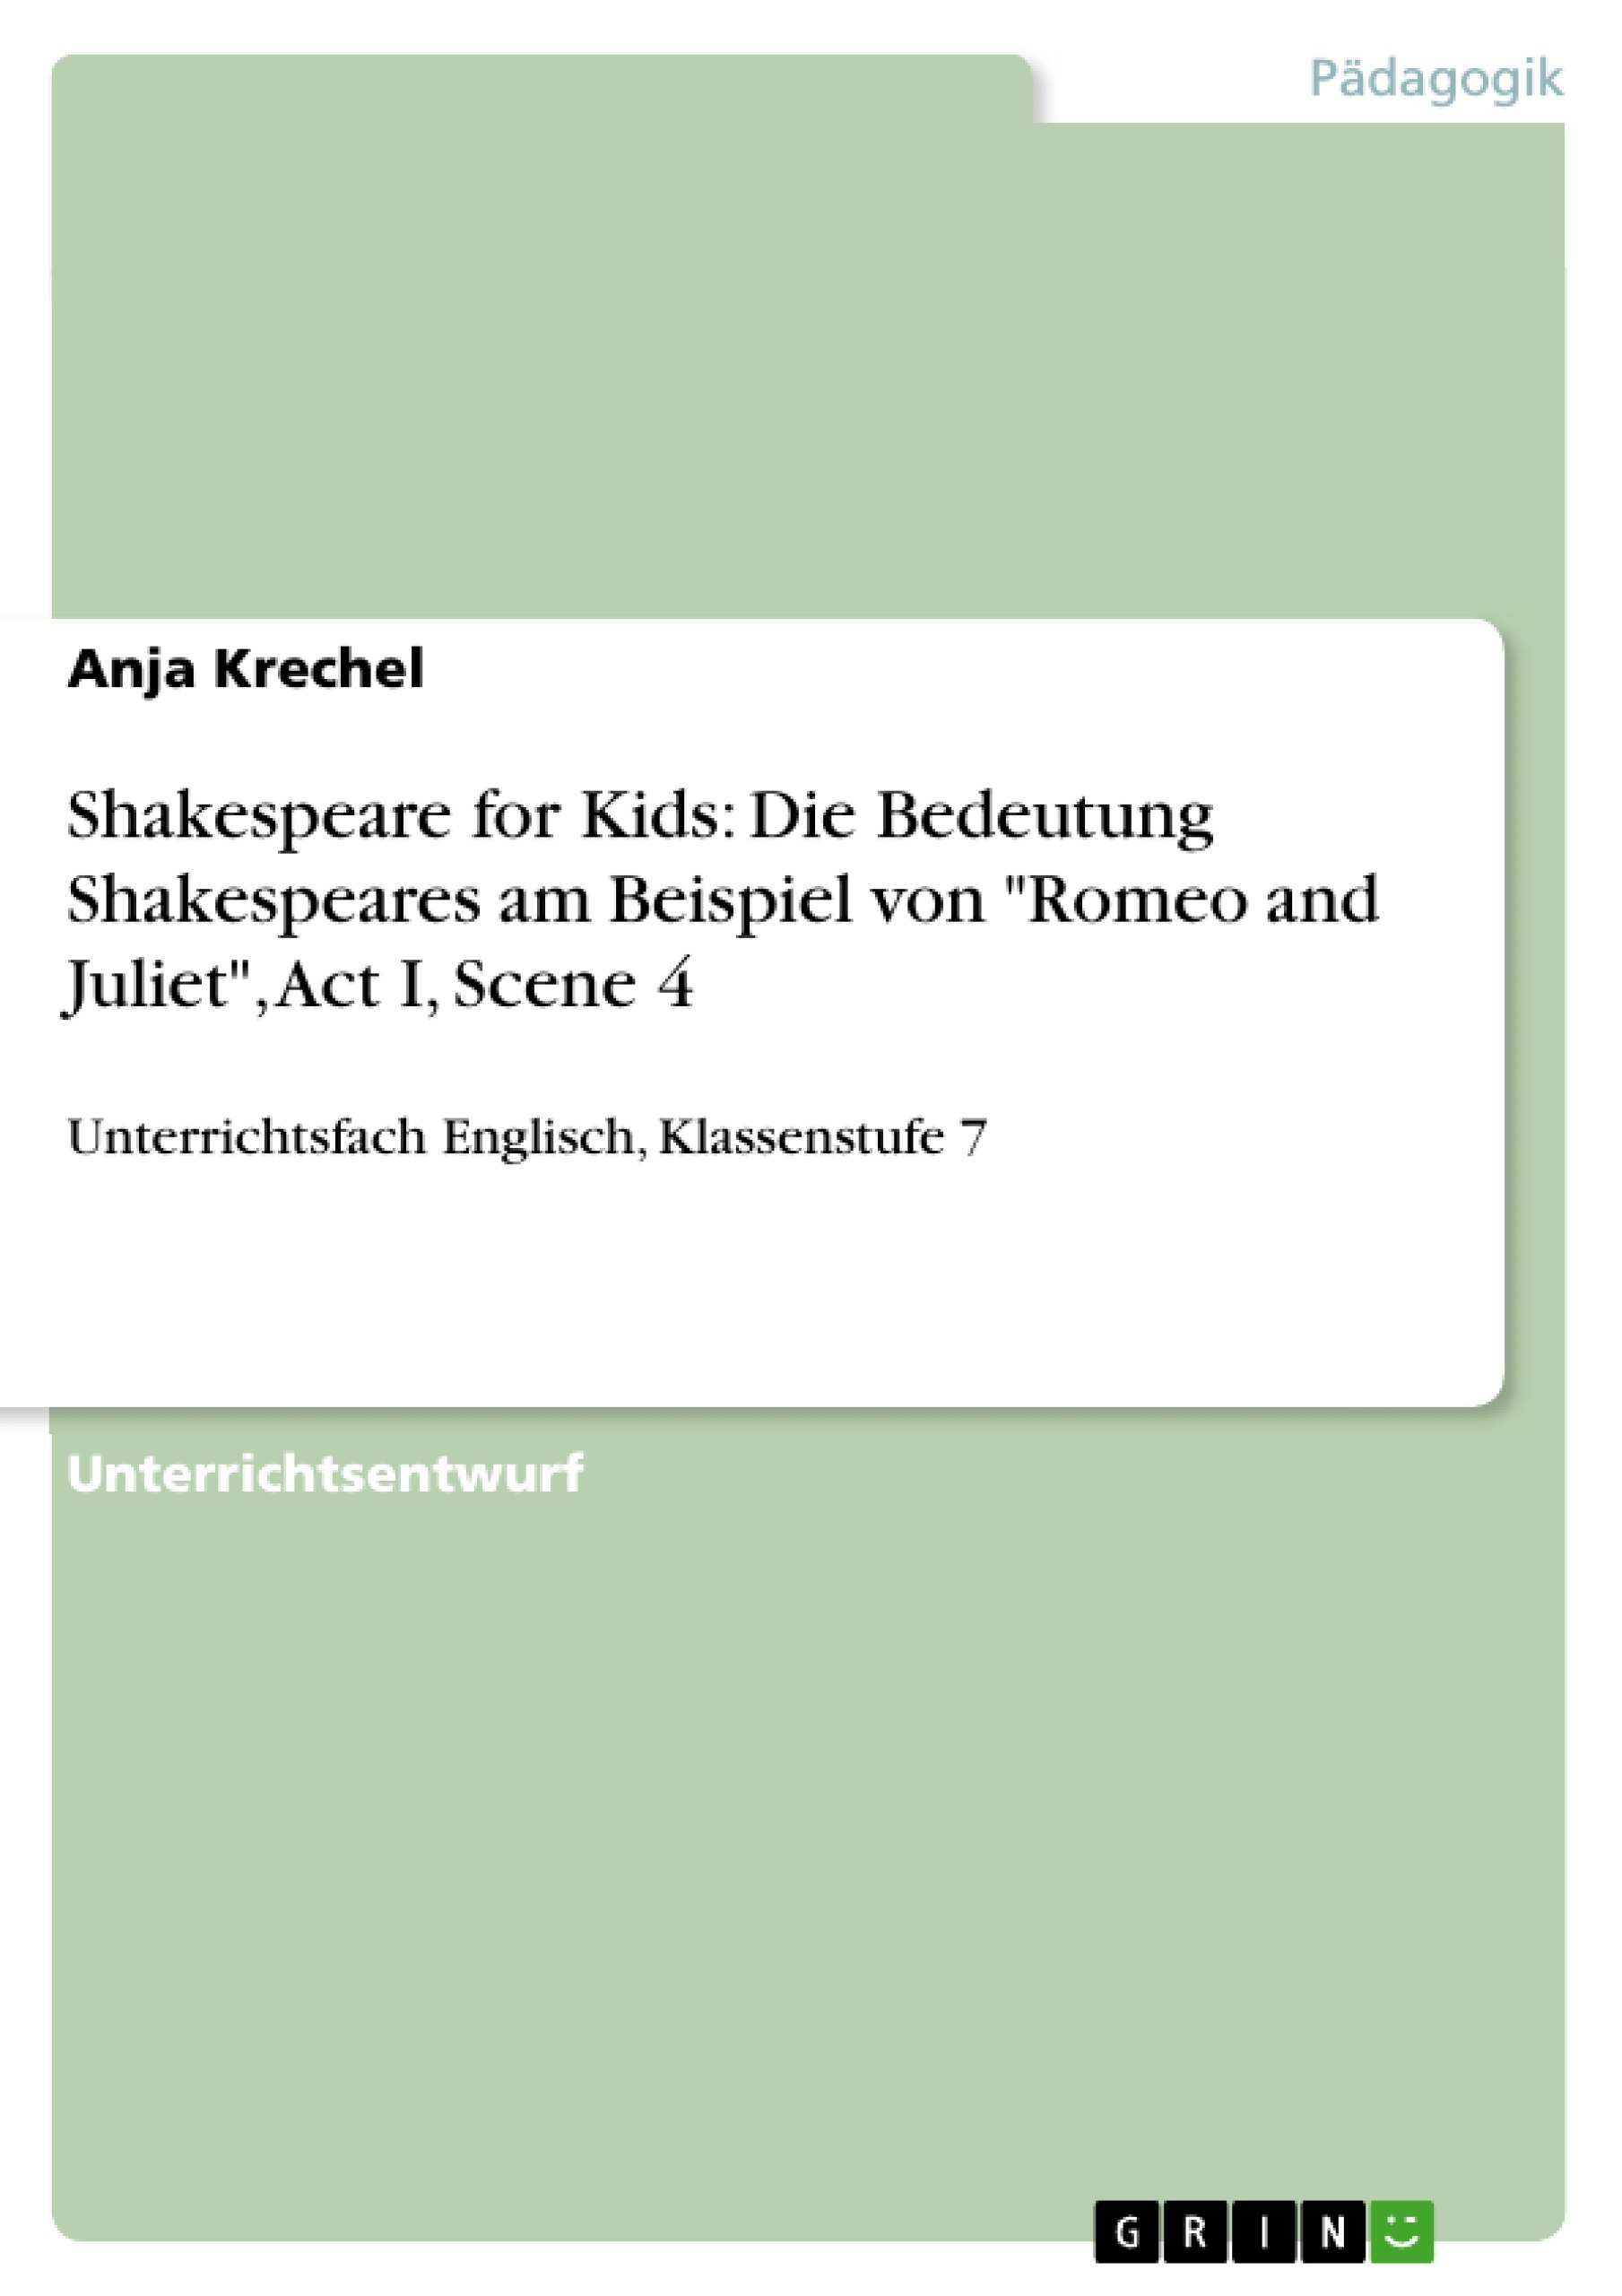 Titre: Shakespeare for Kids: Die Bedeutung Shakespeares am Beispiel von "Romeo and Juliet", Act I, Scene 4